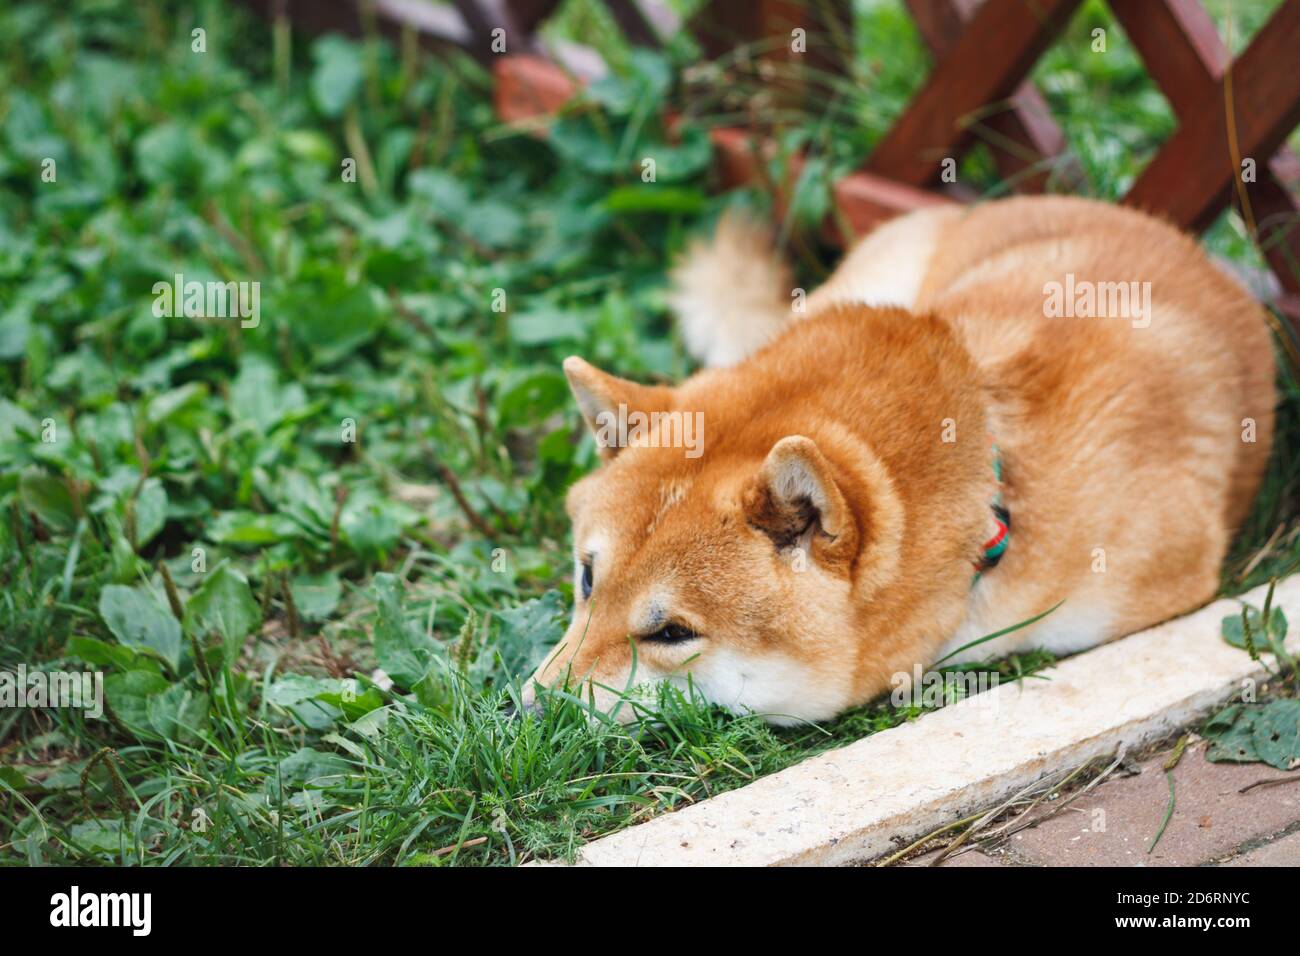 Il cane giapponese di razza Shiba Inu giace sull'erba verde in una giornata estiva soleggiata. Giapponese piccolo Dog Shiba Ken riposo su erba Foto Stock